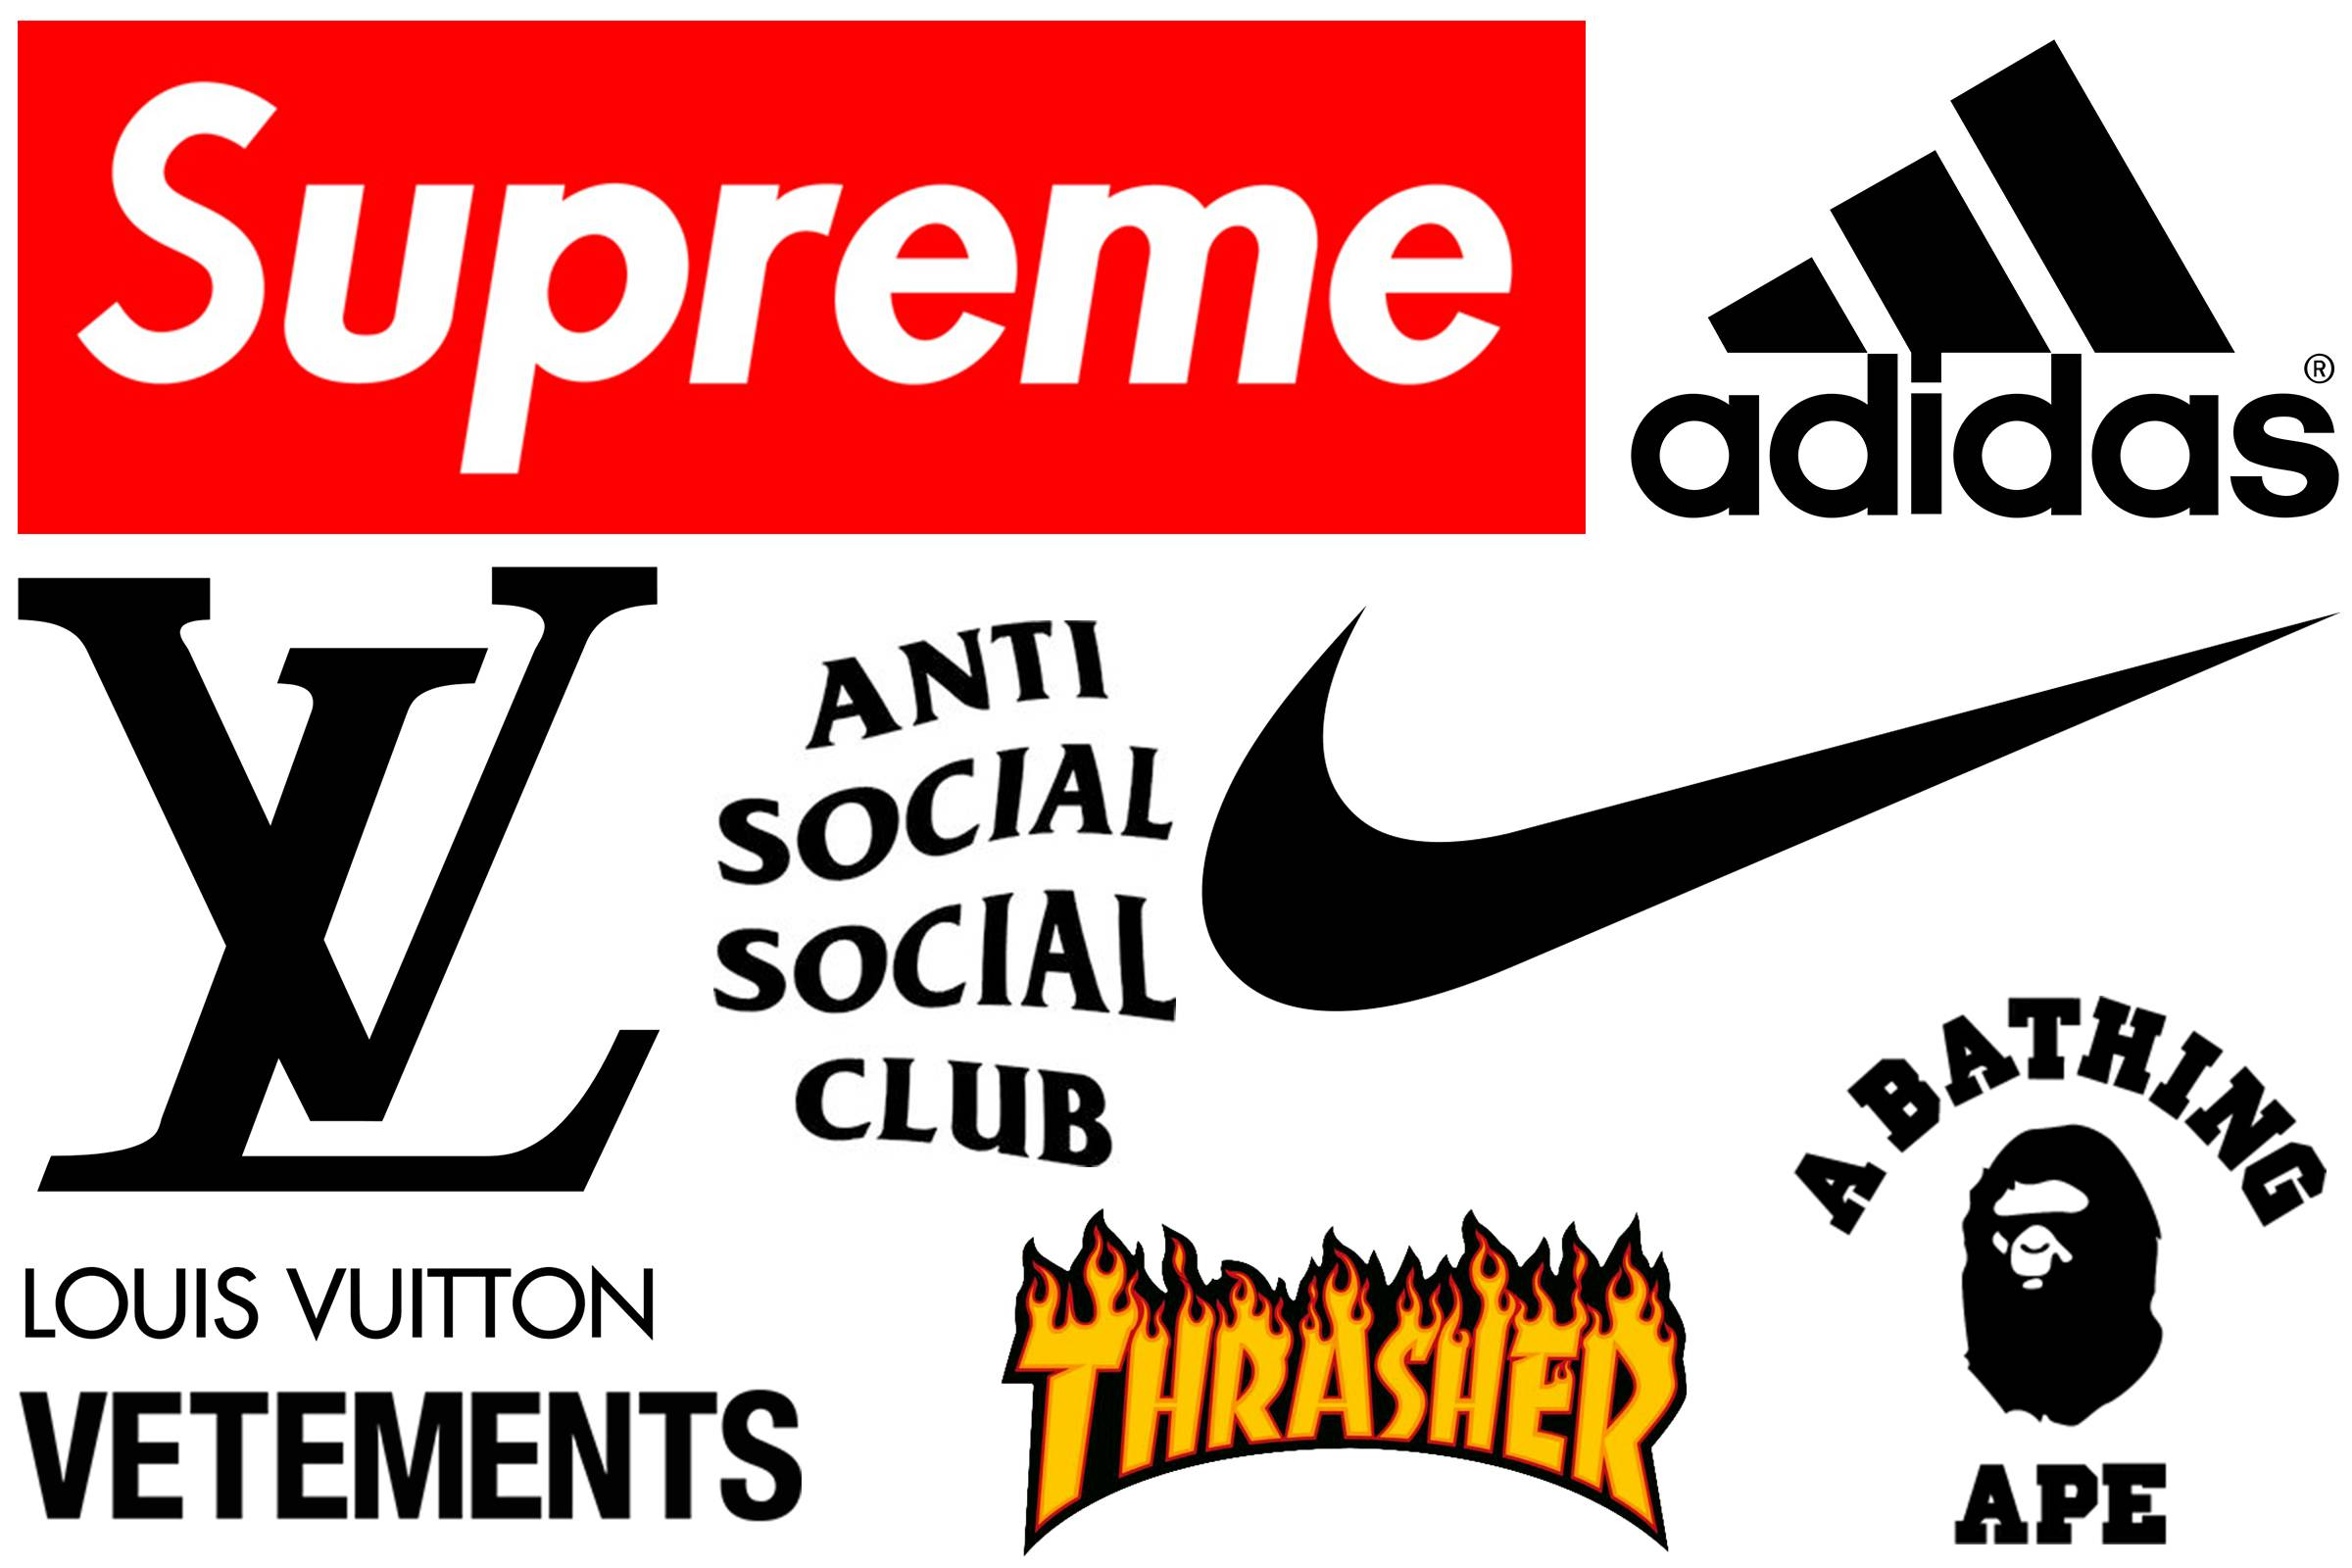 Фирма одежды и обуви. Торговые марки одежды. Логотипы известных брендов. Логотипы известных брендов одежды. Знаменитые бренды.